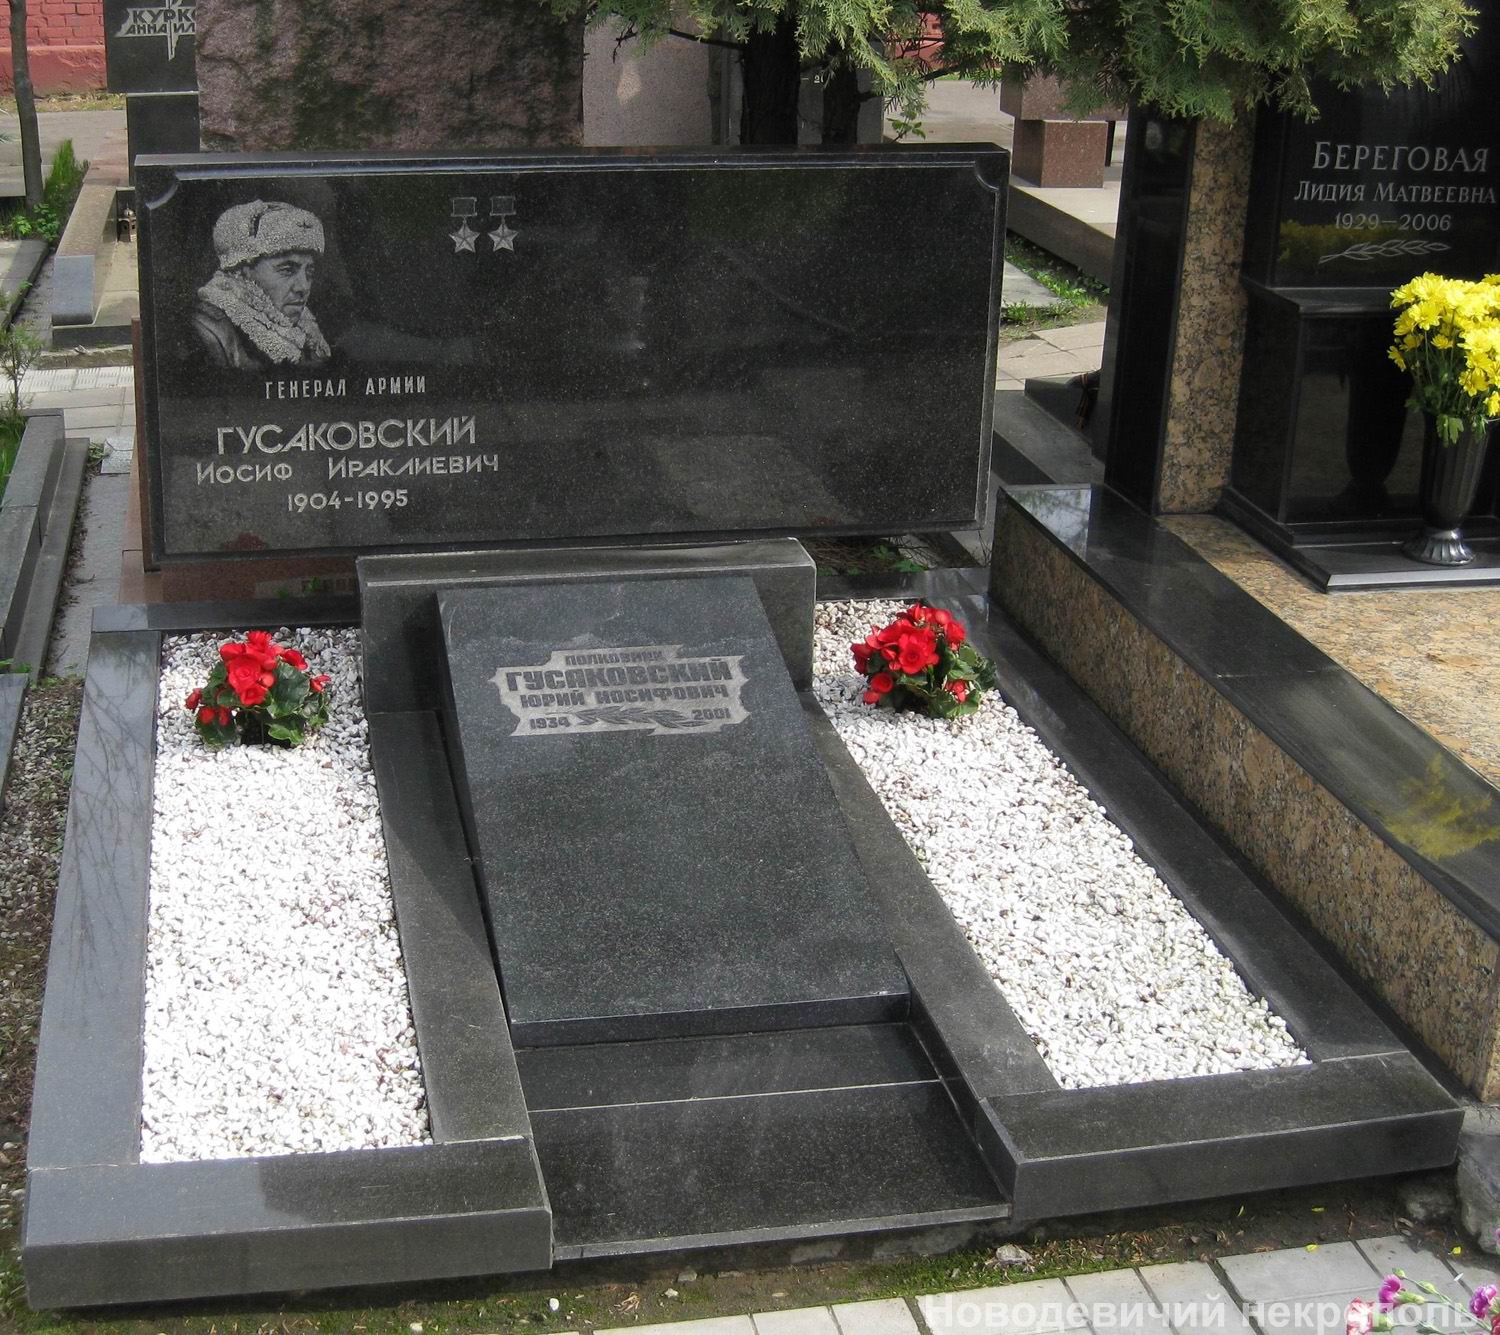 Памятник на могиле Гусаковского И.И. (1904-1995), на Новодевичьем кладбище (11-4-6).